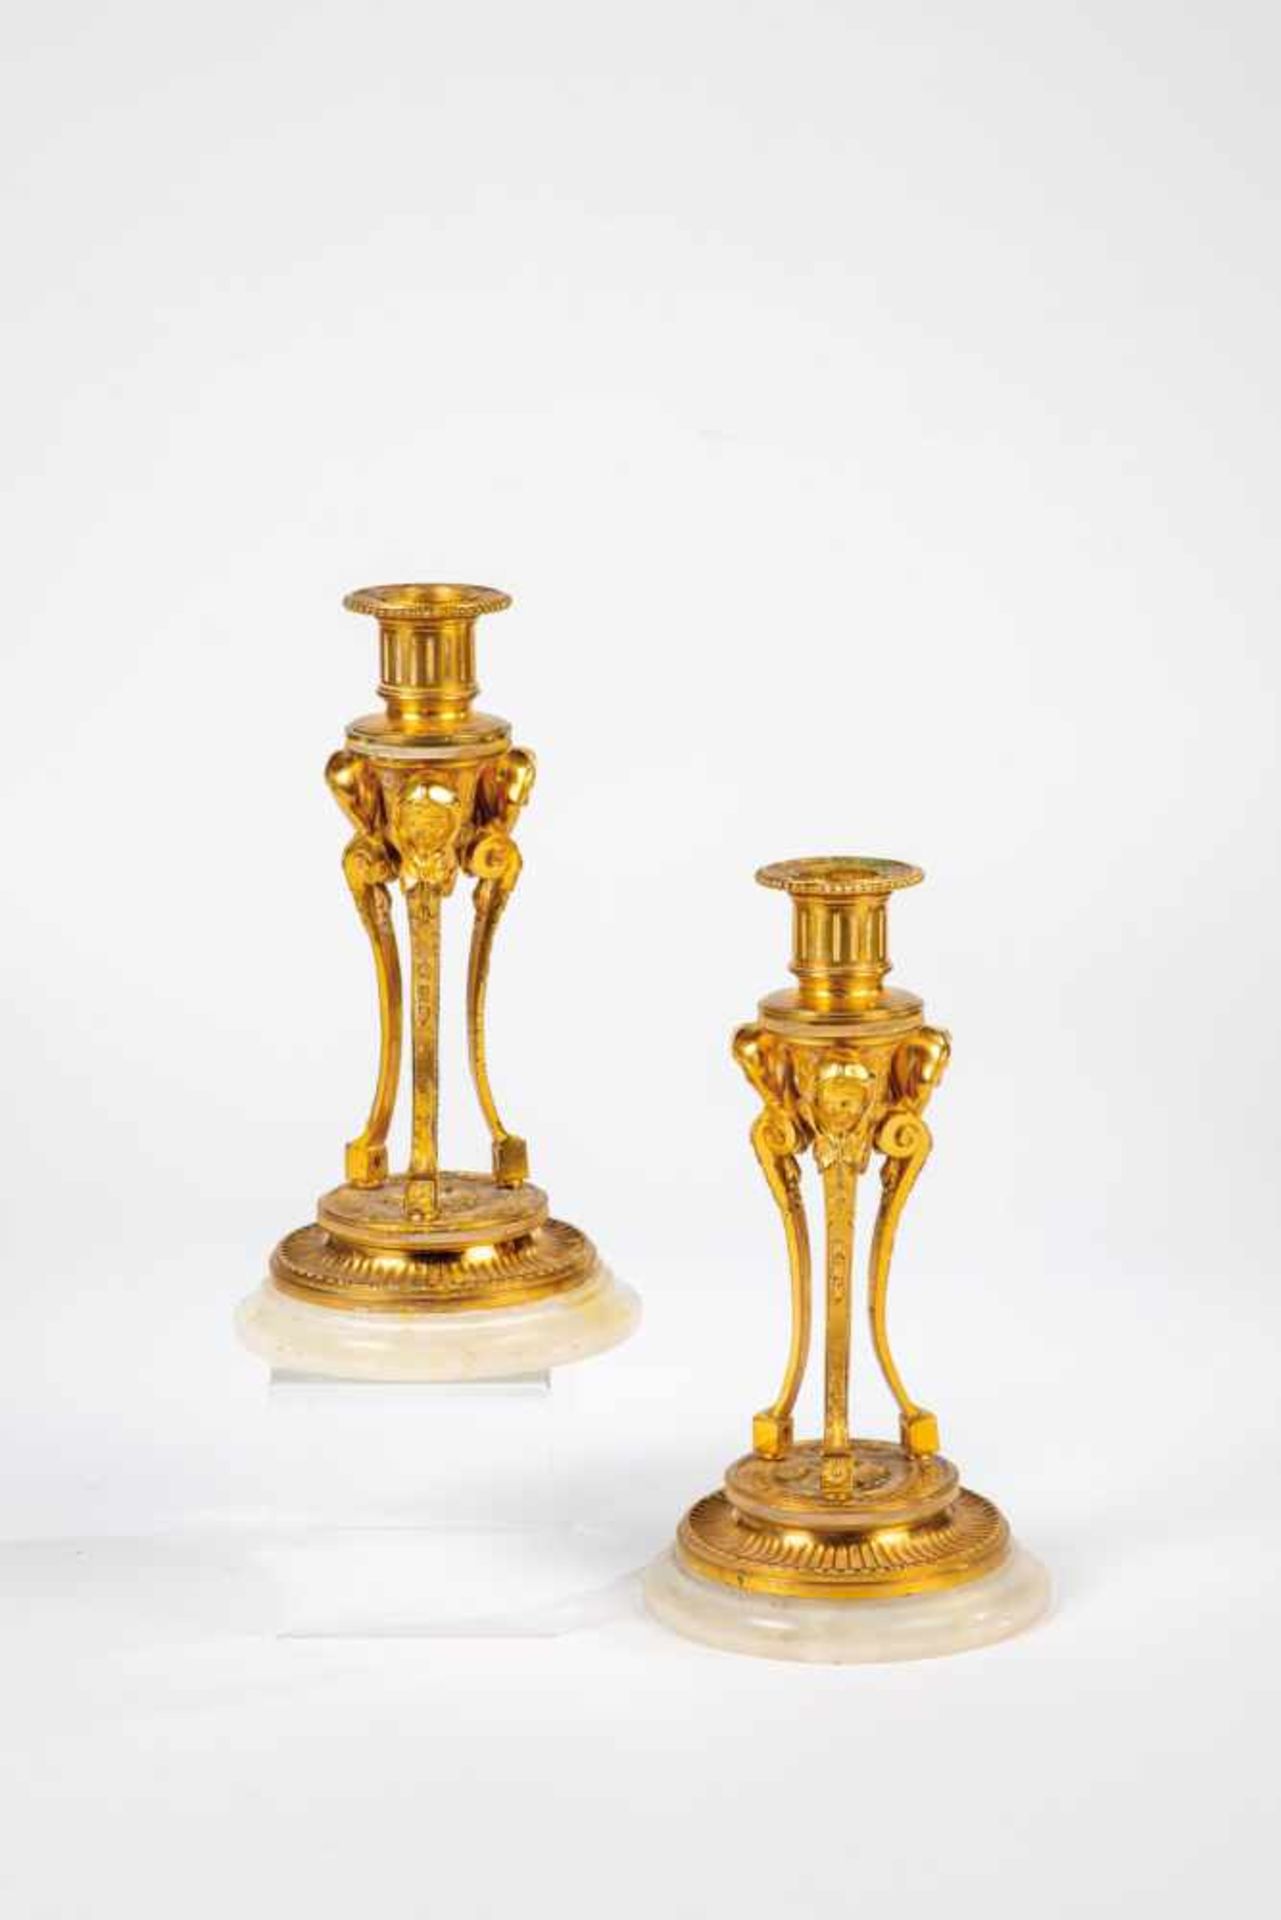 Paar LeuchterFrankreich oder Russland, um 1800 Bronze vergoldet, auf weißem Steinsockel.